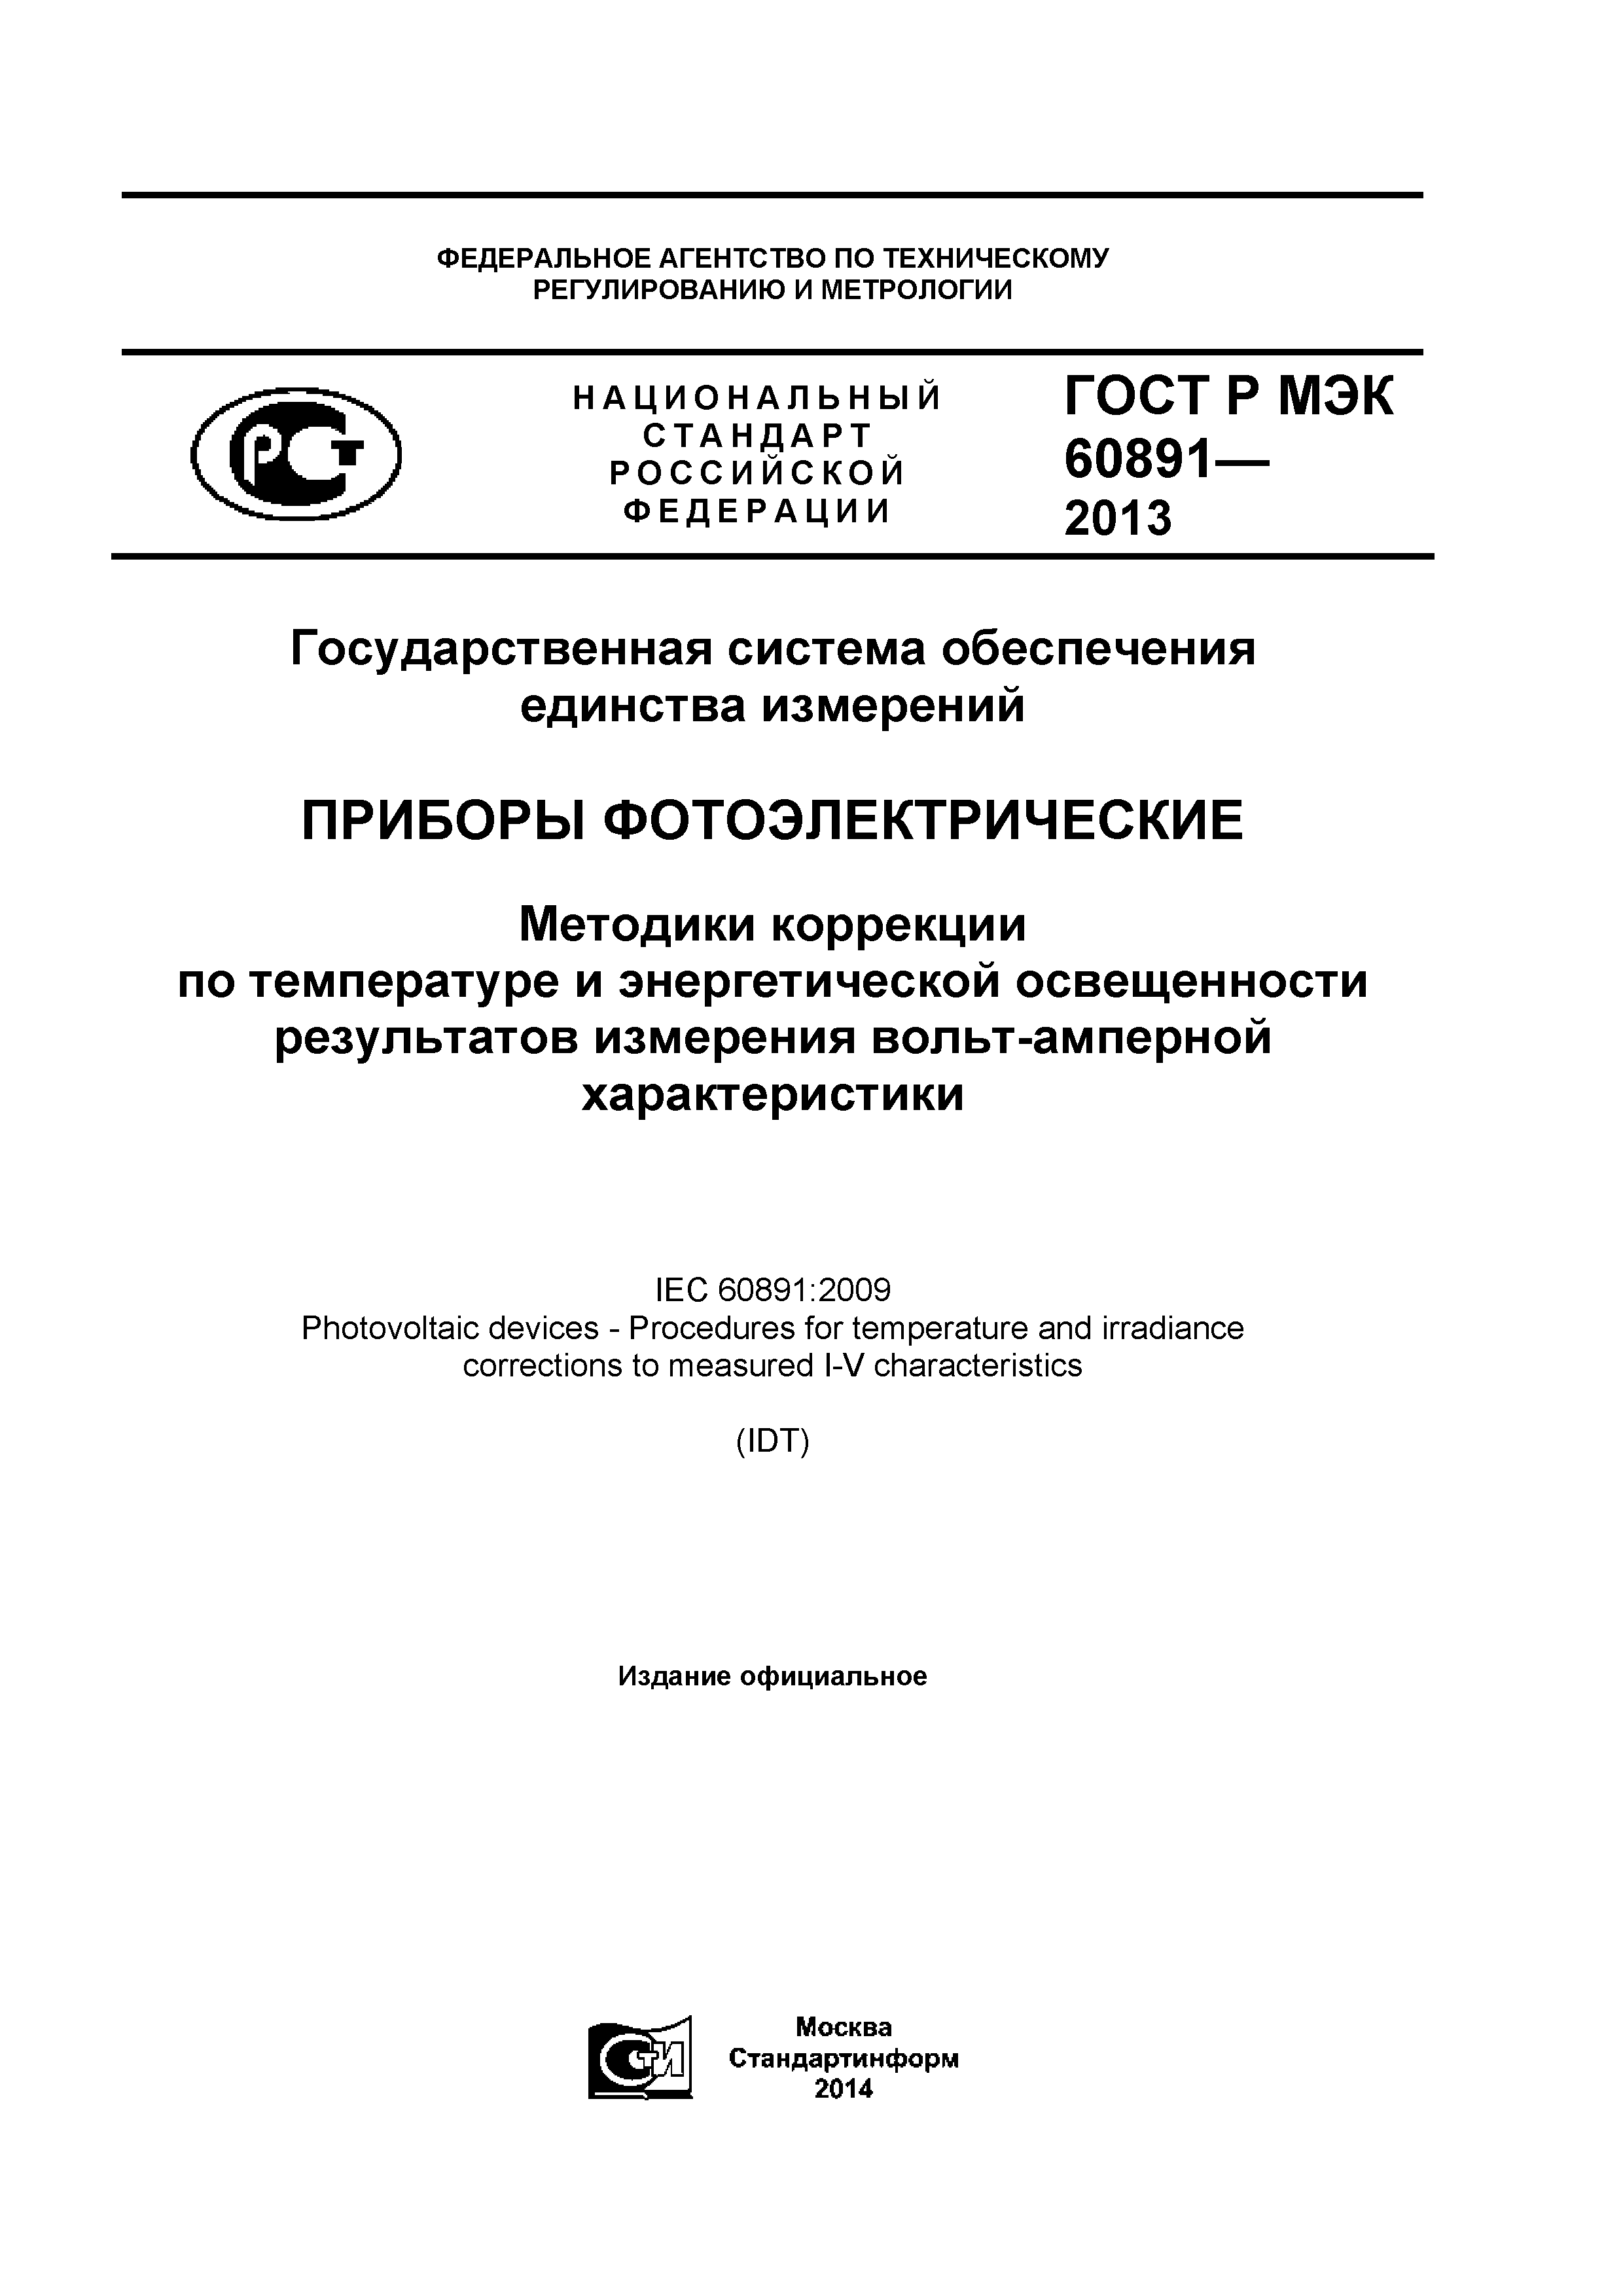 ГОСТ Р МЭК 60891-2013